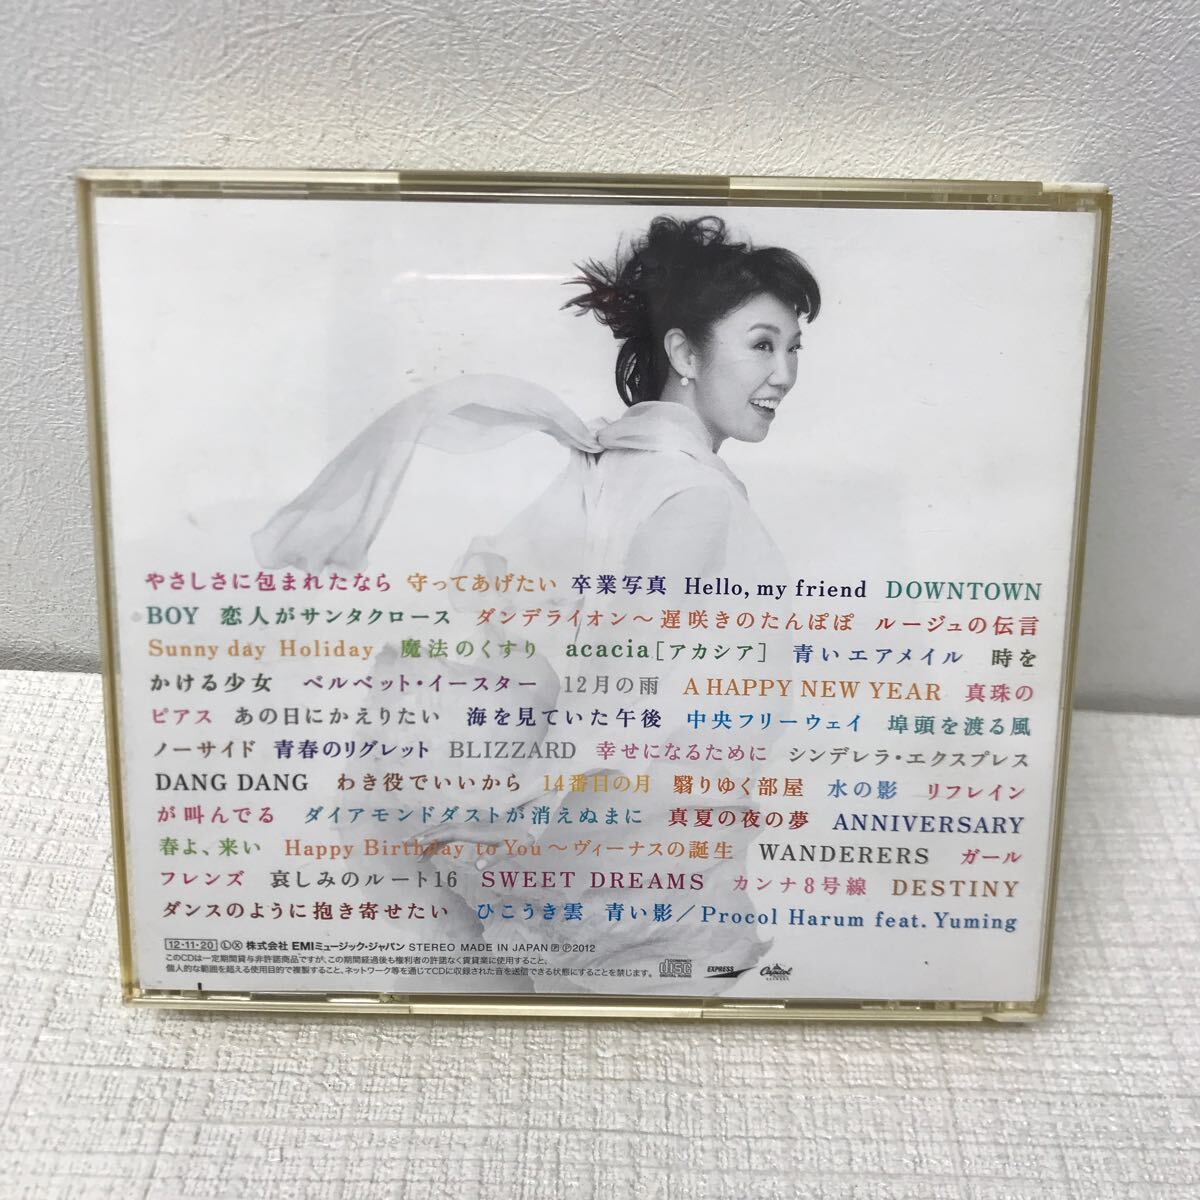 I0411A3 日本の恋と、ユーミンと。 松任谷由実 40周年記念 ベストアルバム CD 3枚組 音楽 邦楽 やさしさに包まれたなら 卒業写真 他_画像2